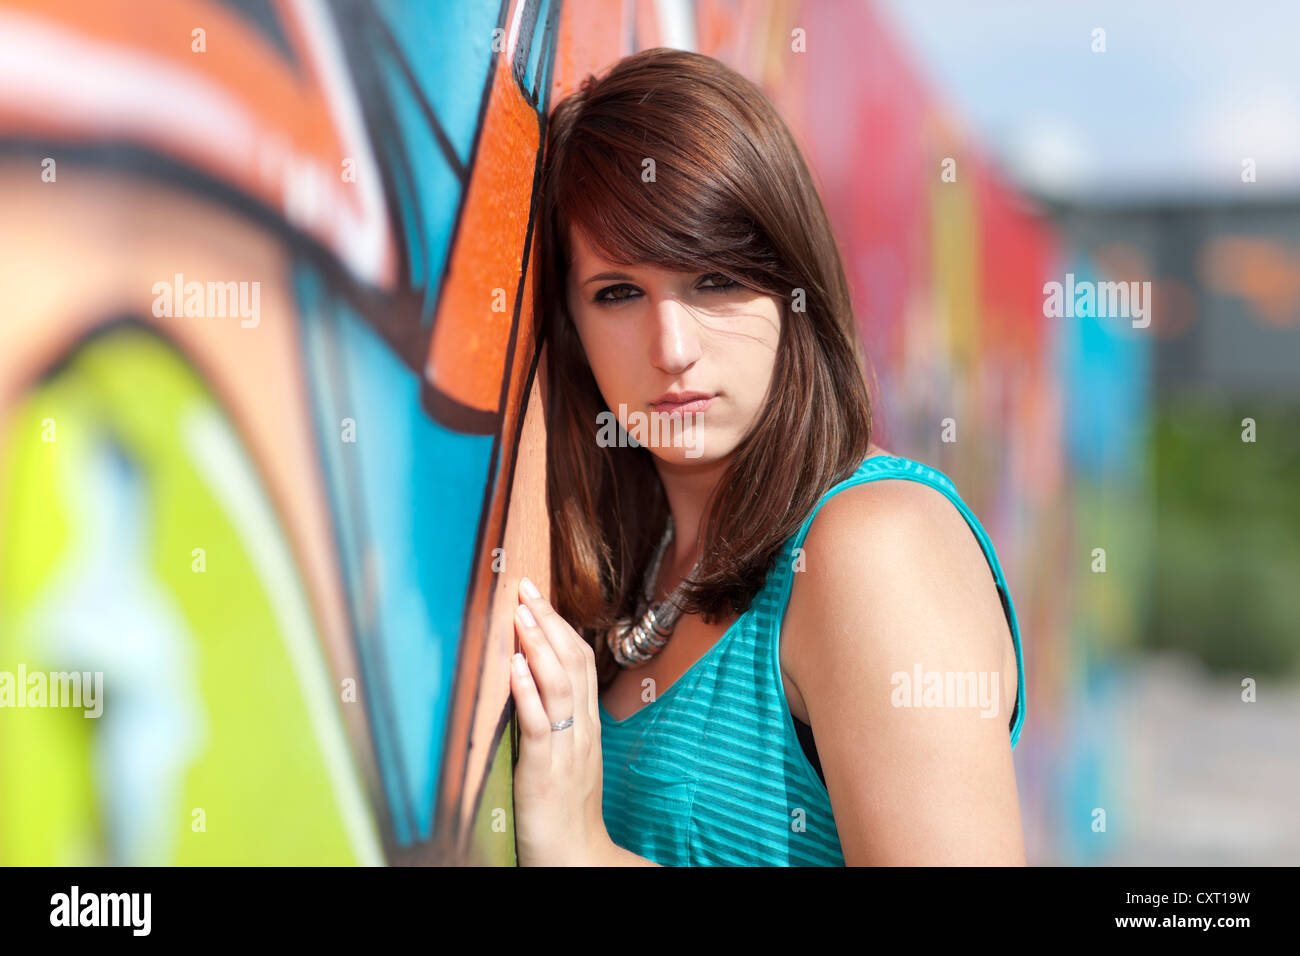 Junge Frau trägt ein türkises Top, schwarze Leggings und high Heels vor Wand mit Graffiti, Porträt Stockfoto